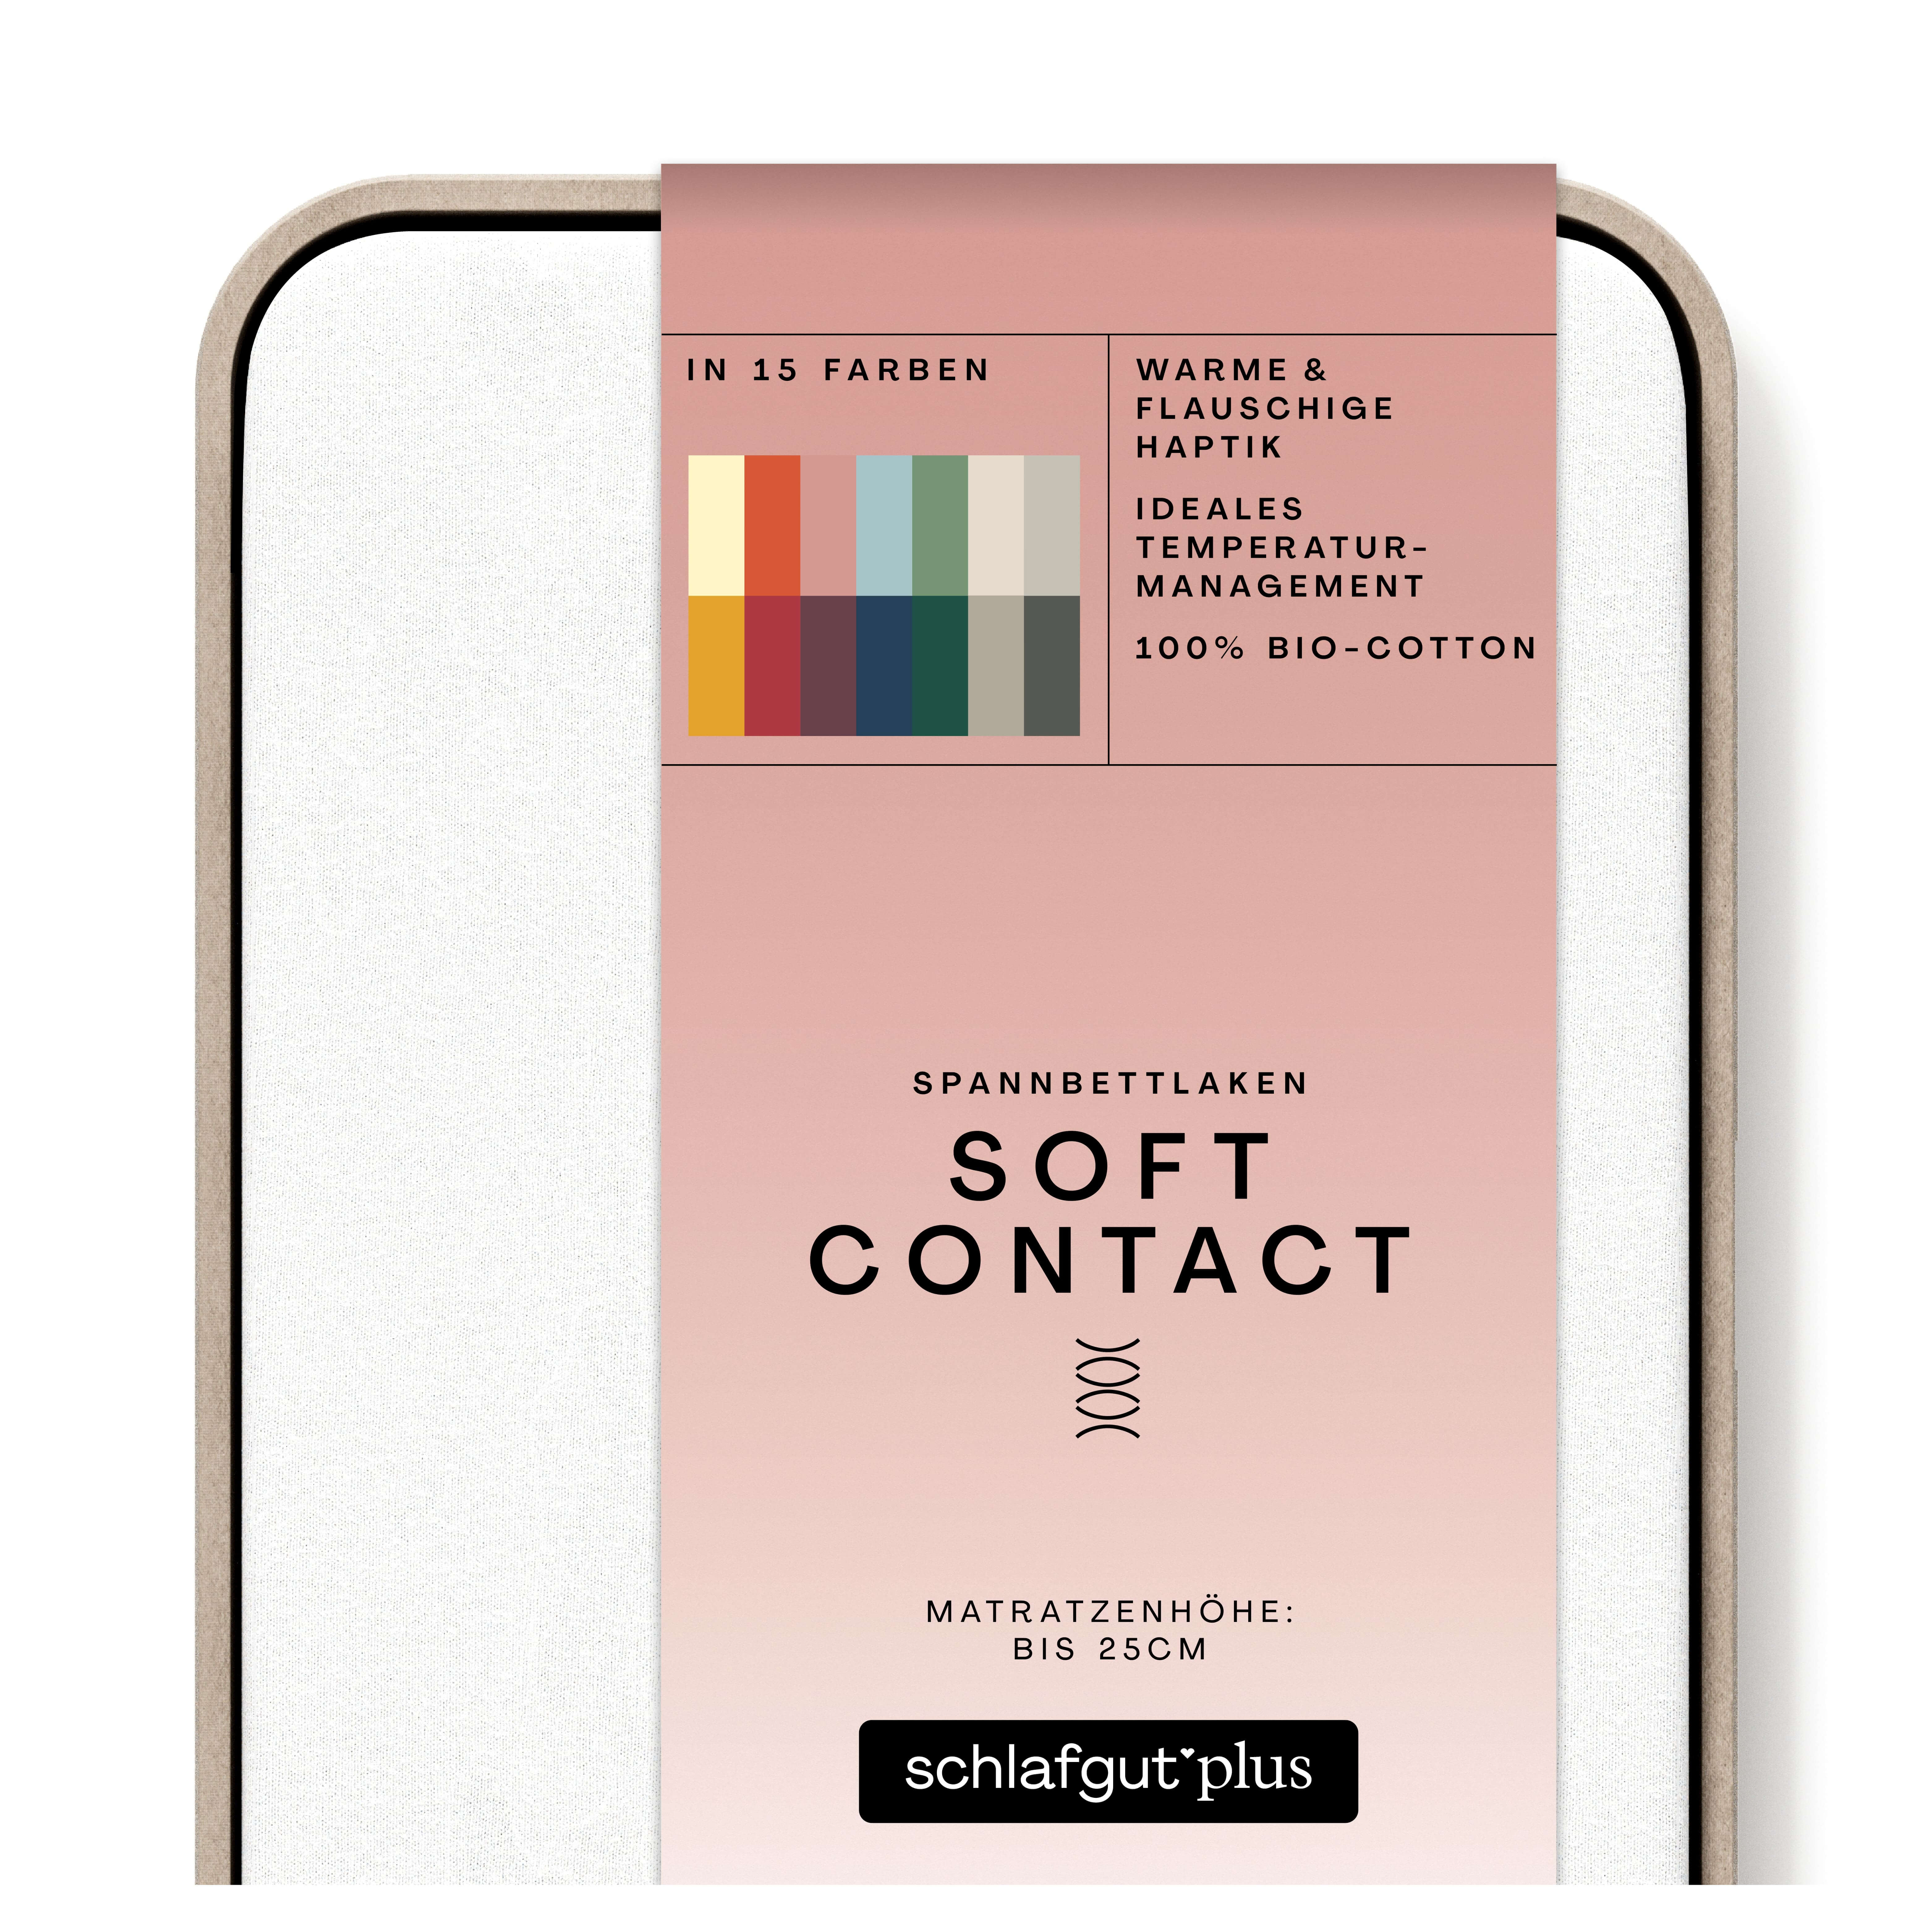 Das Produktbild vom Spannbettlaken der Reihe Soft Contact in Farbe full-white von Schlafgut